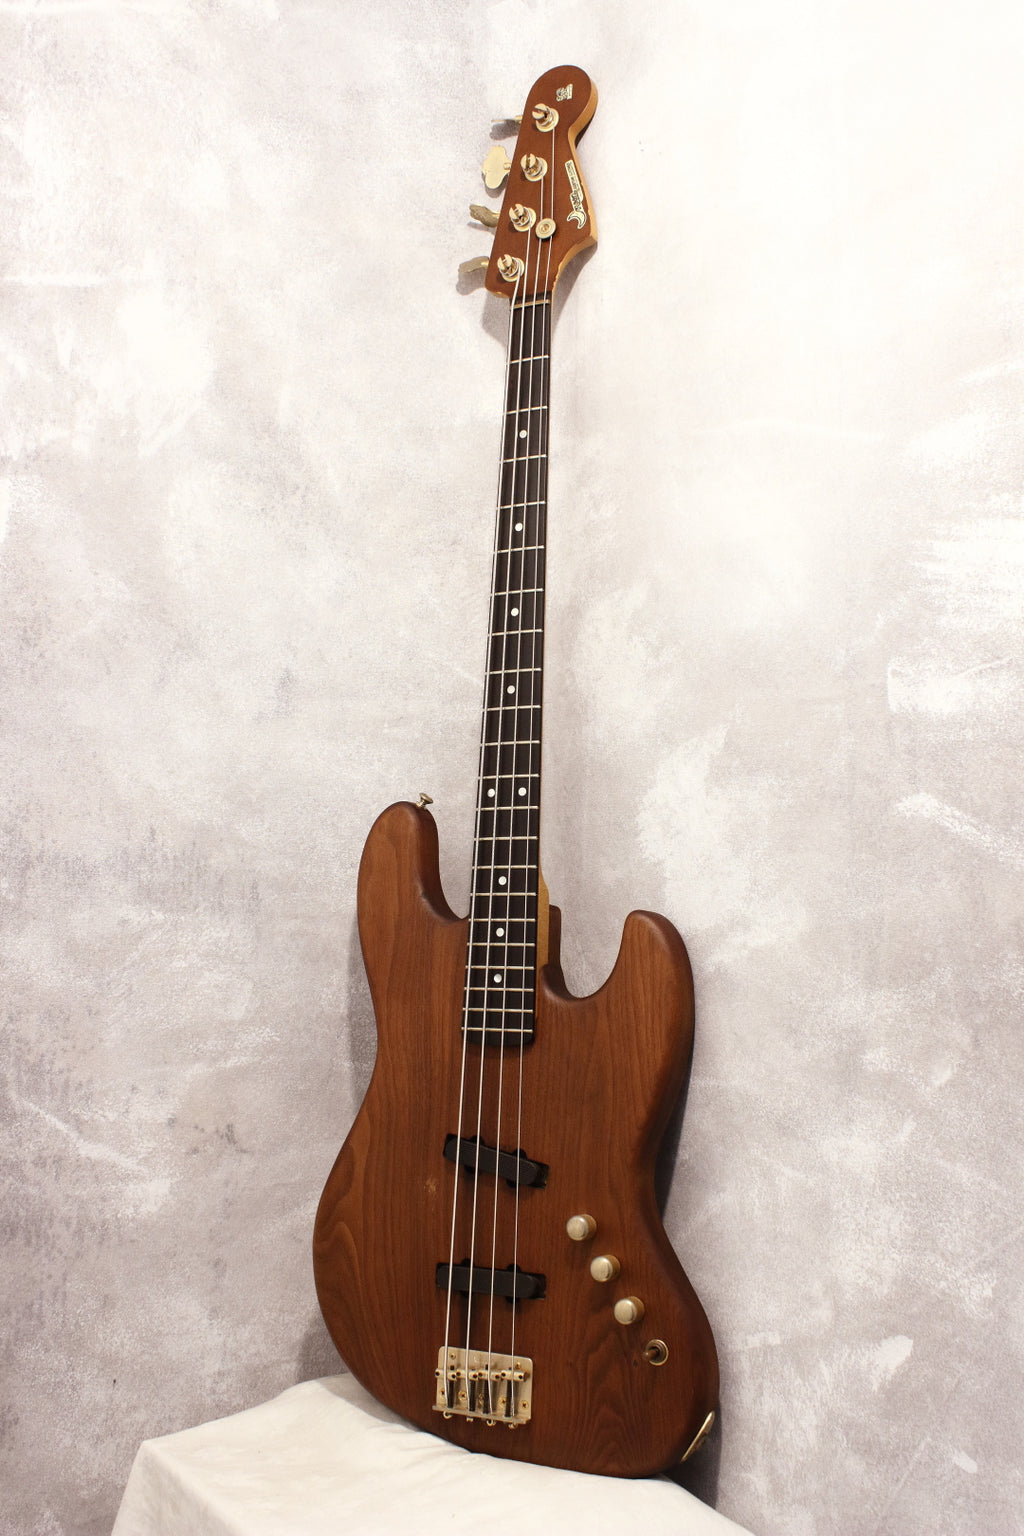 Moon JJ-4 Bass Natural Walnut 1991 – Topshelf Instruments